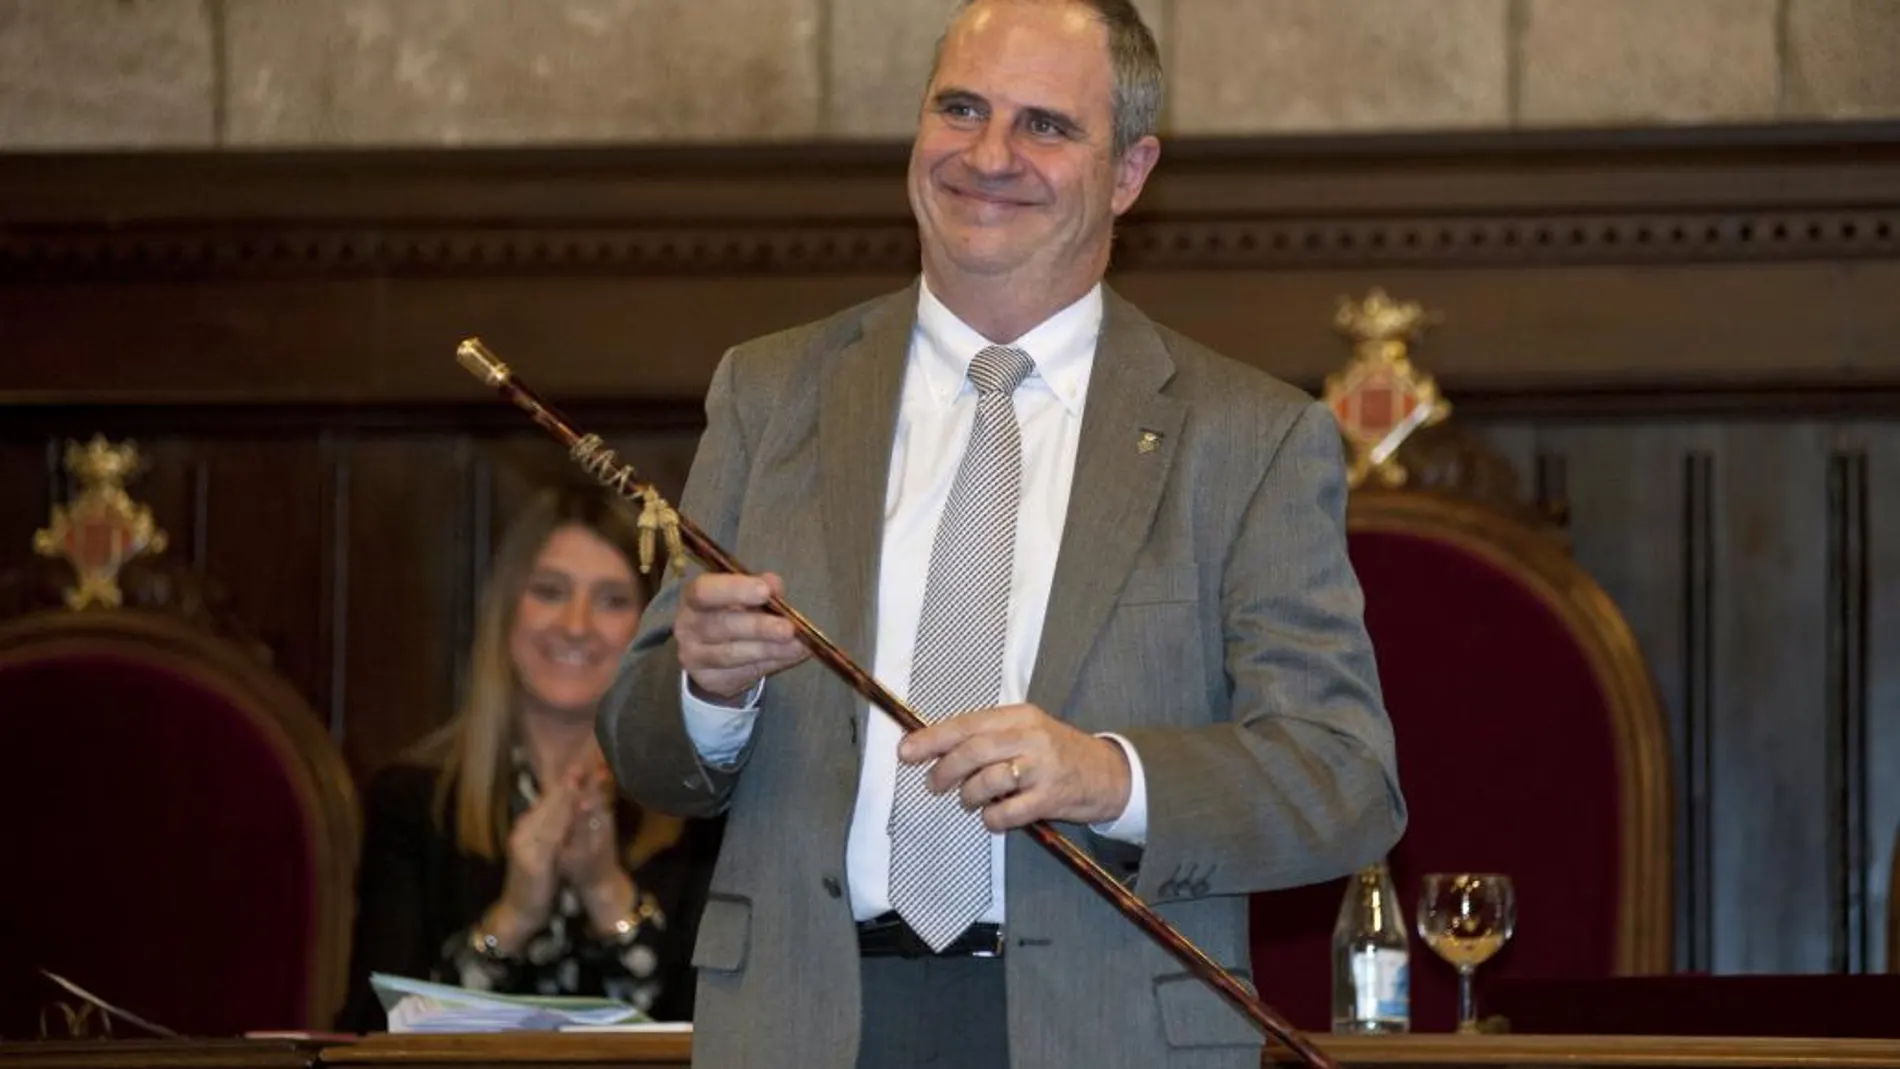 El convergente Albert Ballesta con el bastón de mando, tras ser nombrado nuevo alcalde de Girona